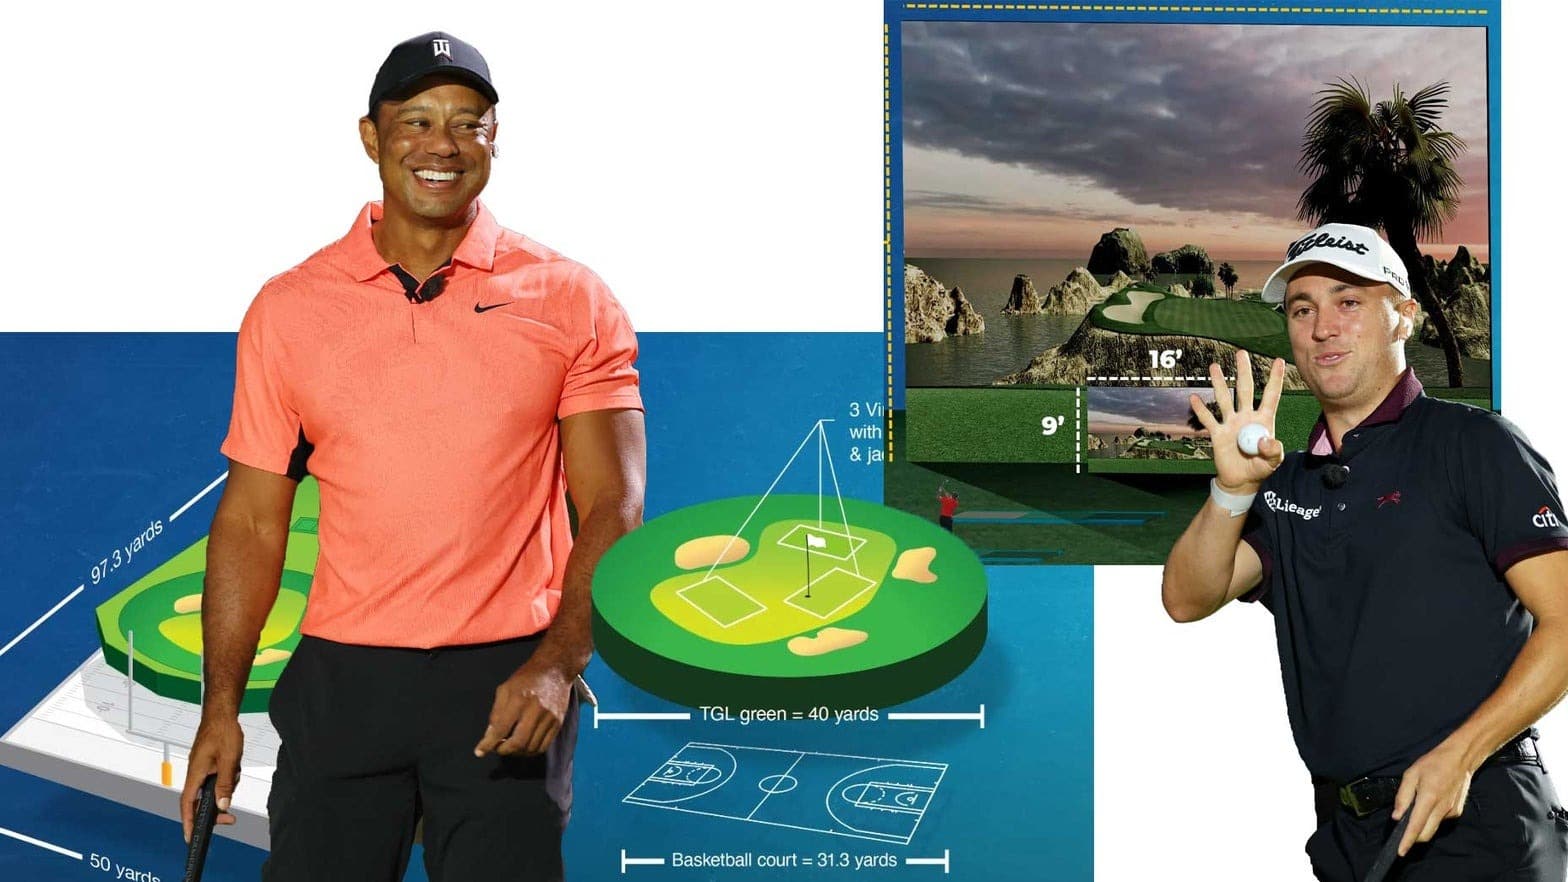 TGL của Tiger Woods sẽ thi đấu cả trên môi trường giả lập lẫn thực tế. Ảnh: golf.com